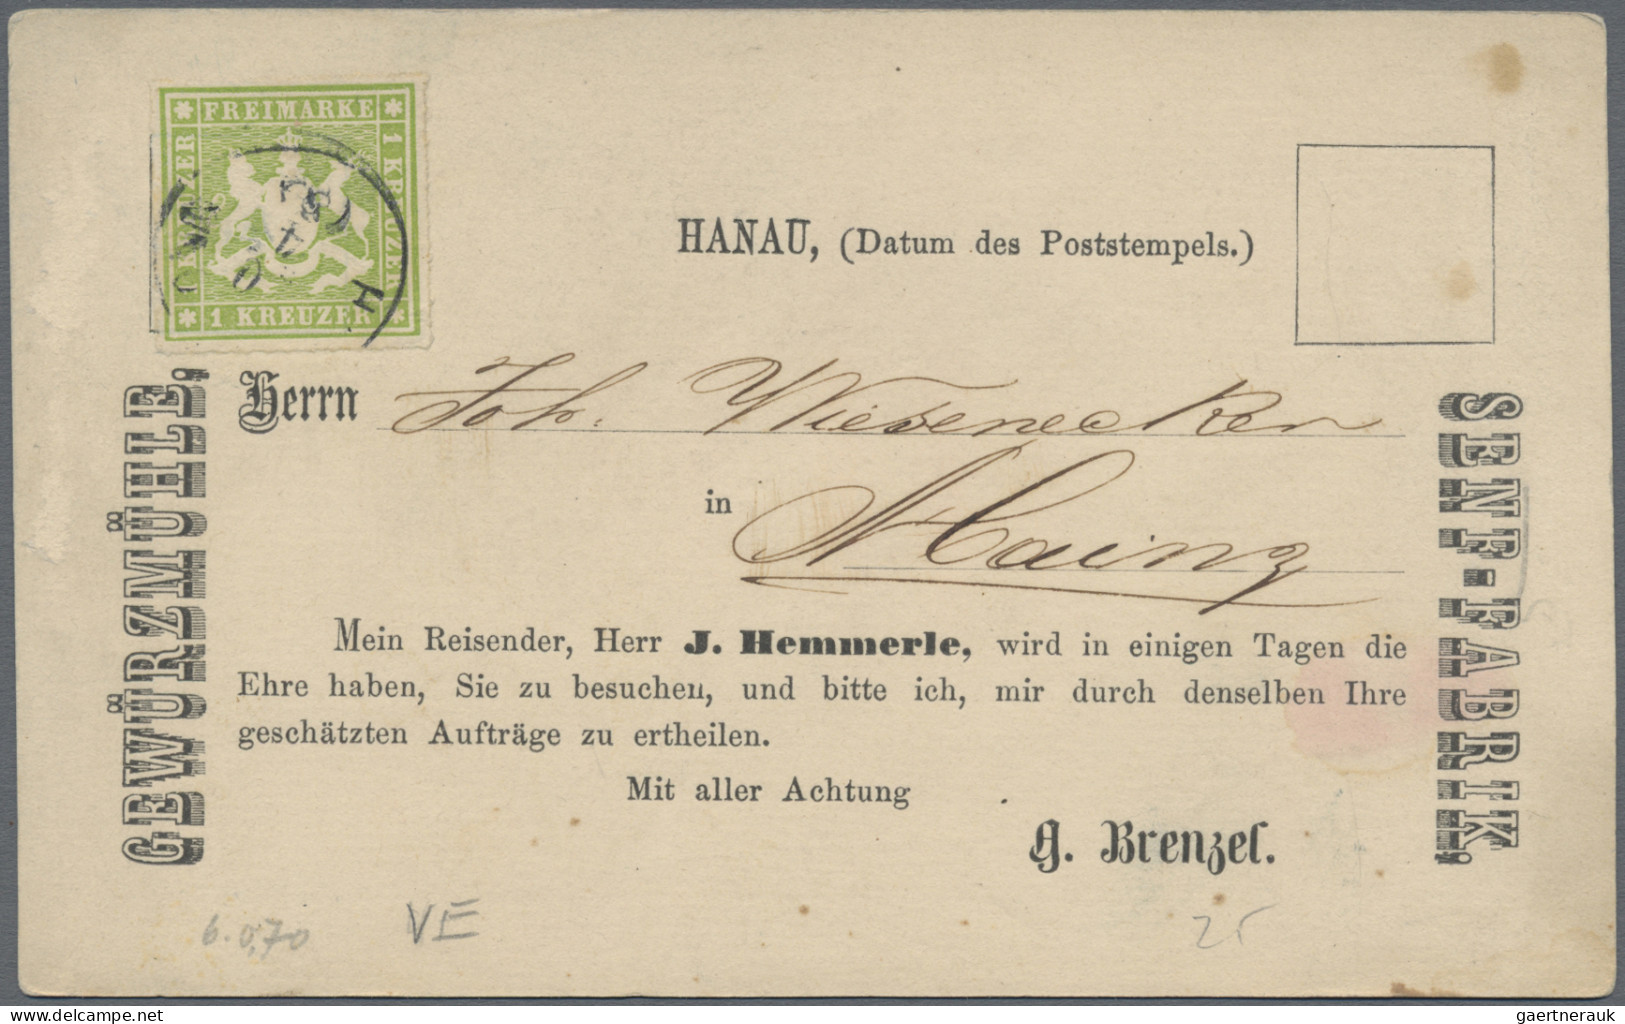 Württemberg - Marken und Briefe: 1860/1874 (ca.), Konvolut von über 125 Belegen